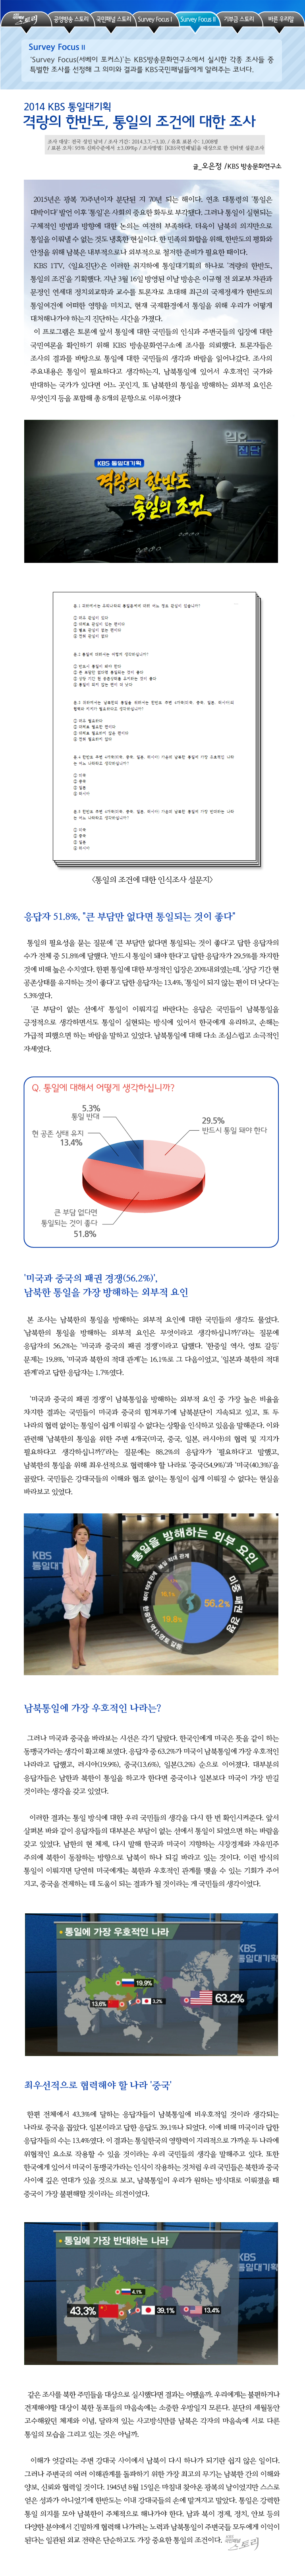 국민패널 - Survey Focus2